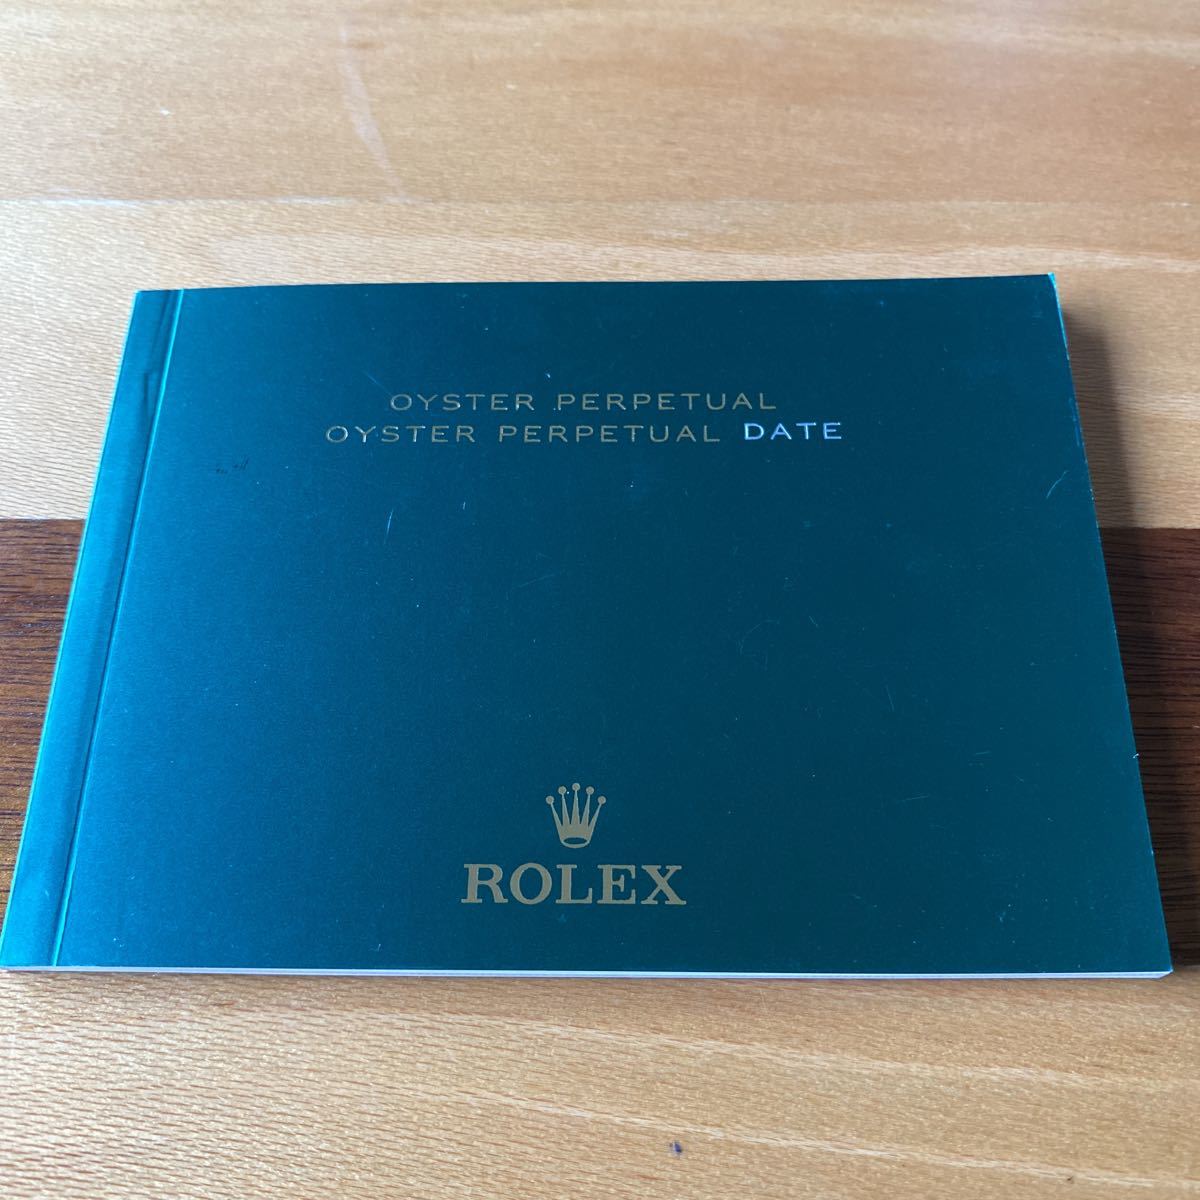 2180【希少必見】ロレックス パーペェチュアル冊子2020年度版 OYSTER PERPETUAL DATE Rolexの画像1